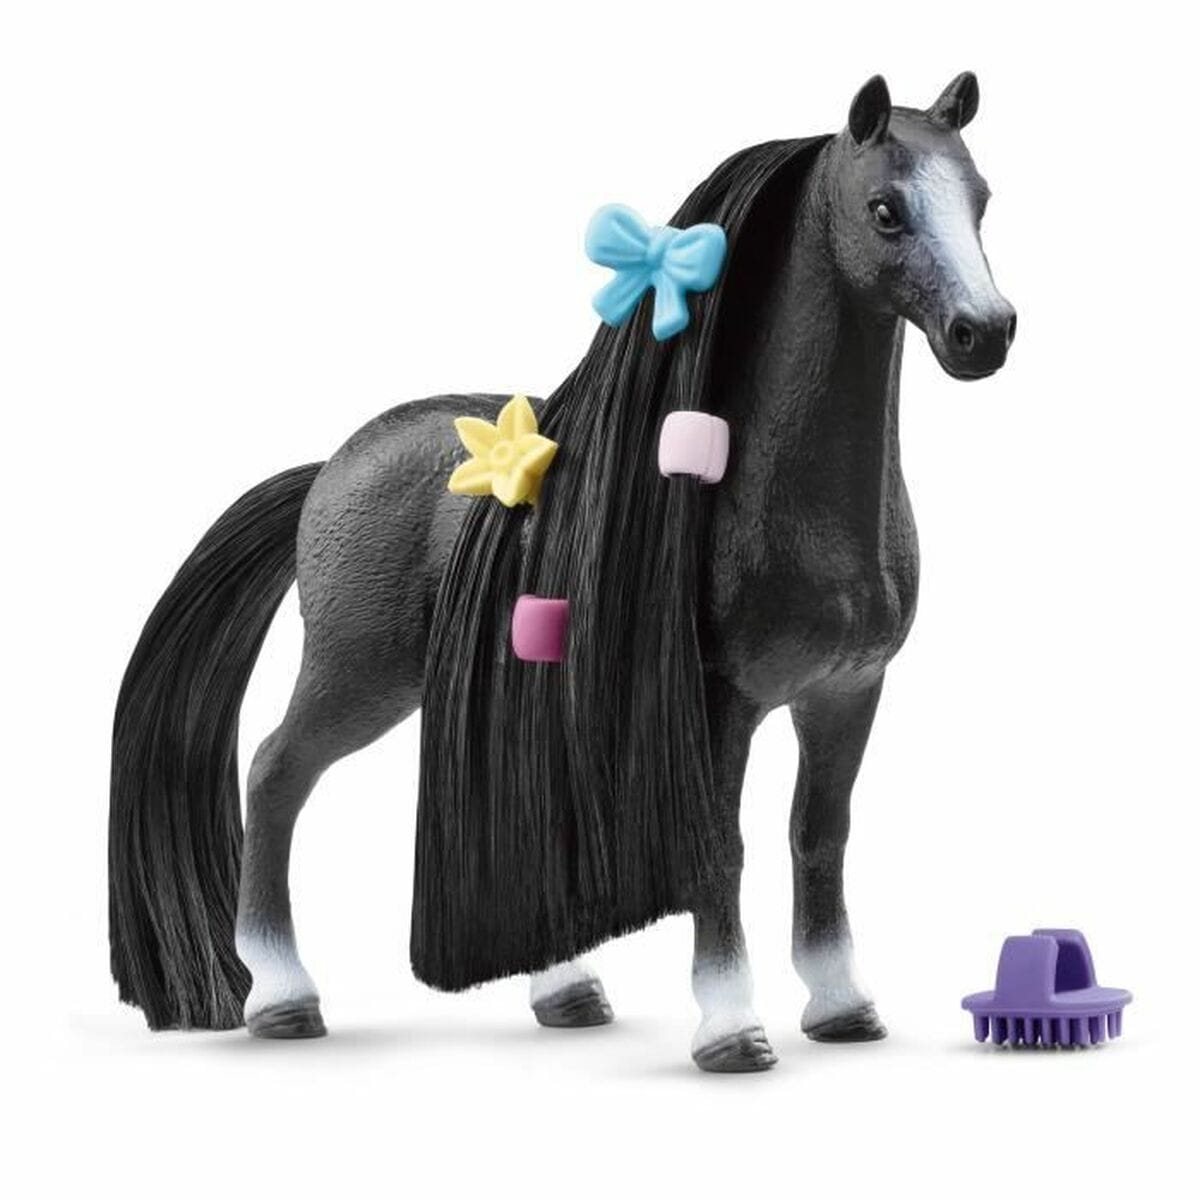 Schleich Spielzeug | Kostüme > Spielzeug und Spiele > Action-Figuren Figur Schleich Beauty Horse Quarter Horse Mare Pferd